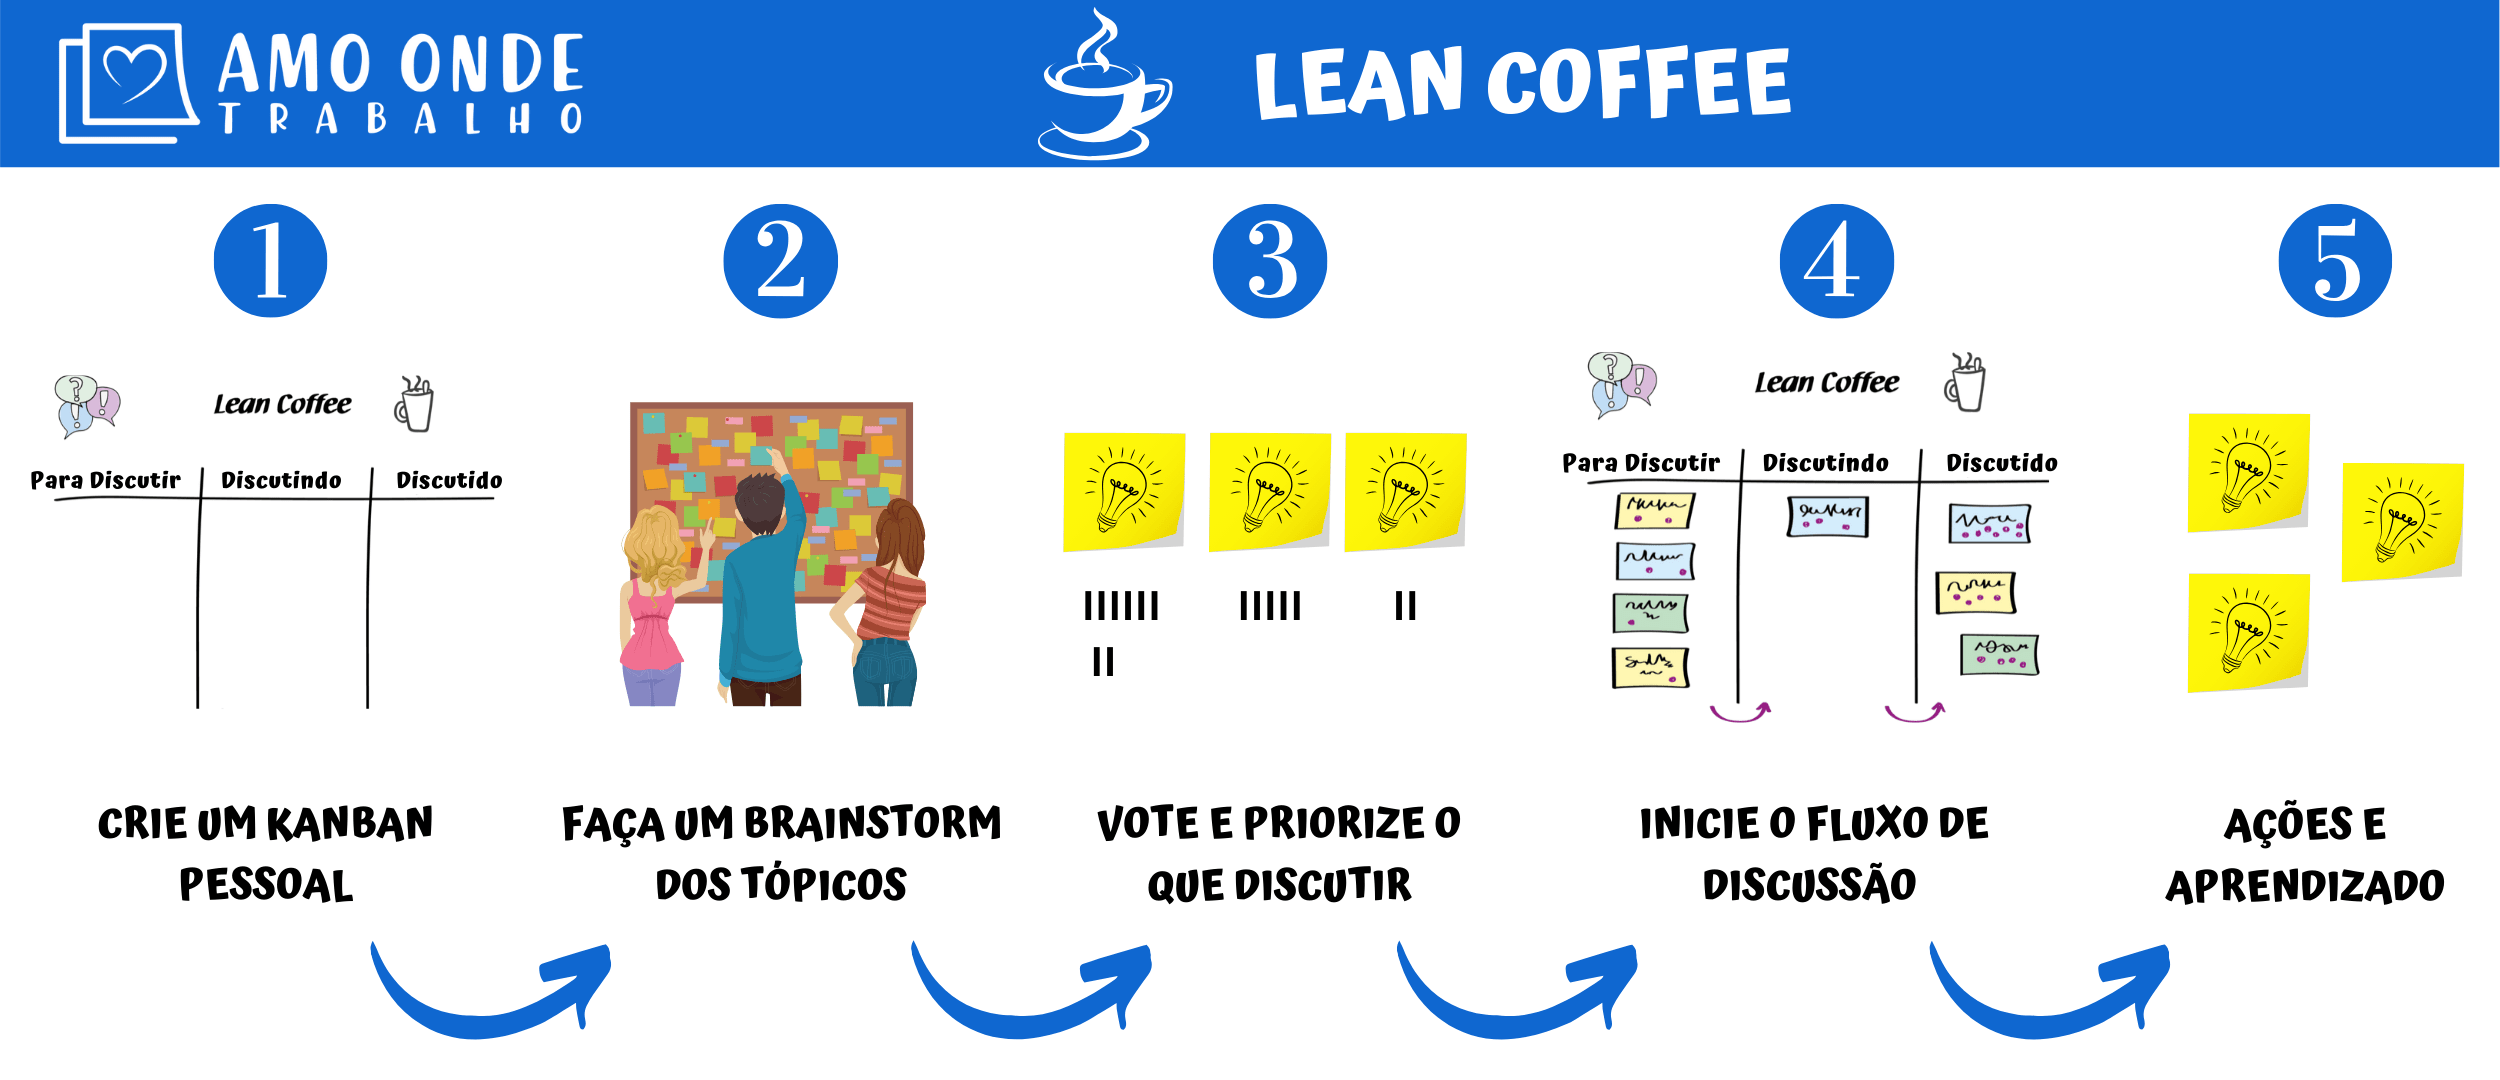 Lean Coffee 2 2